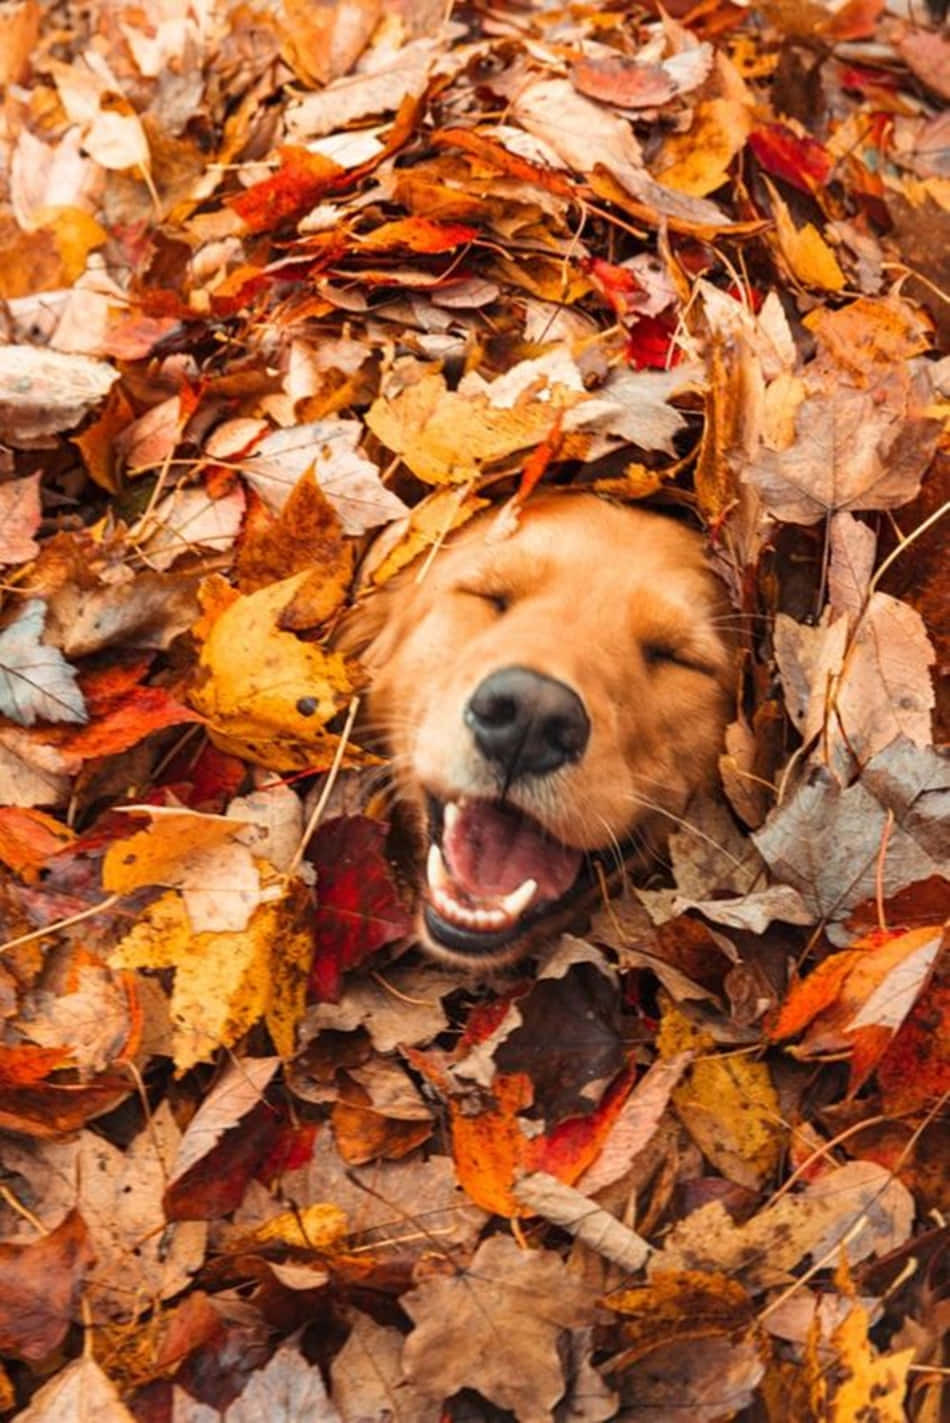 Erhellensie Ihren Herbst Mit Dieser Atemberaubenden, Von Pinterest Inspirierten Herbstlandschaft. Wallpaper